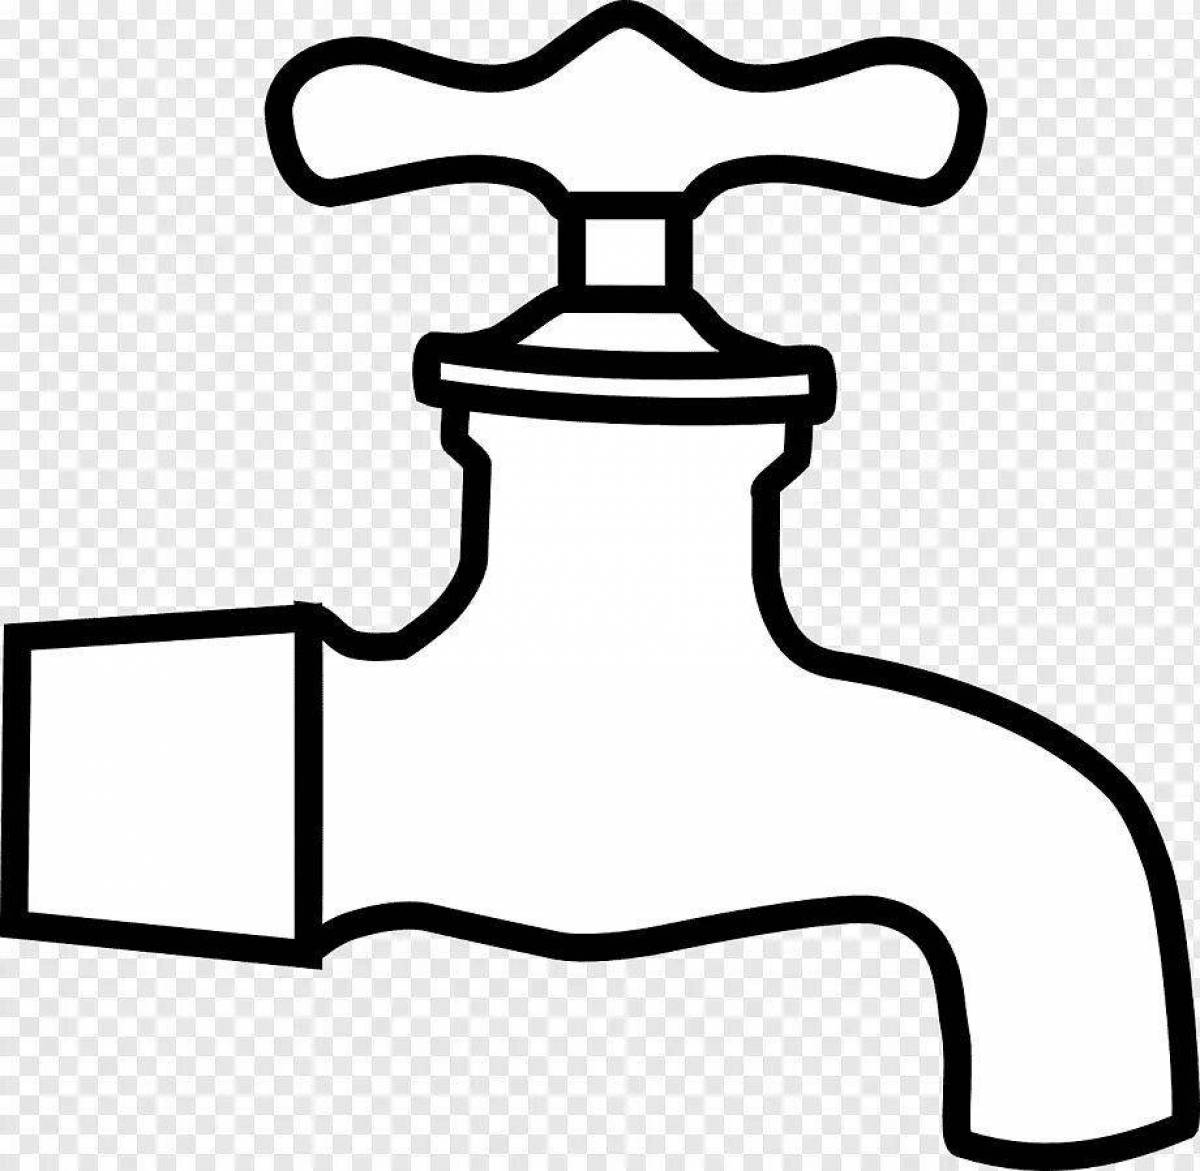 Children's water faucet #25